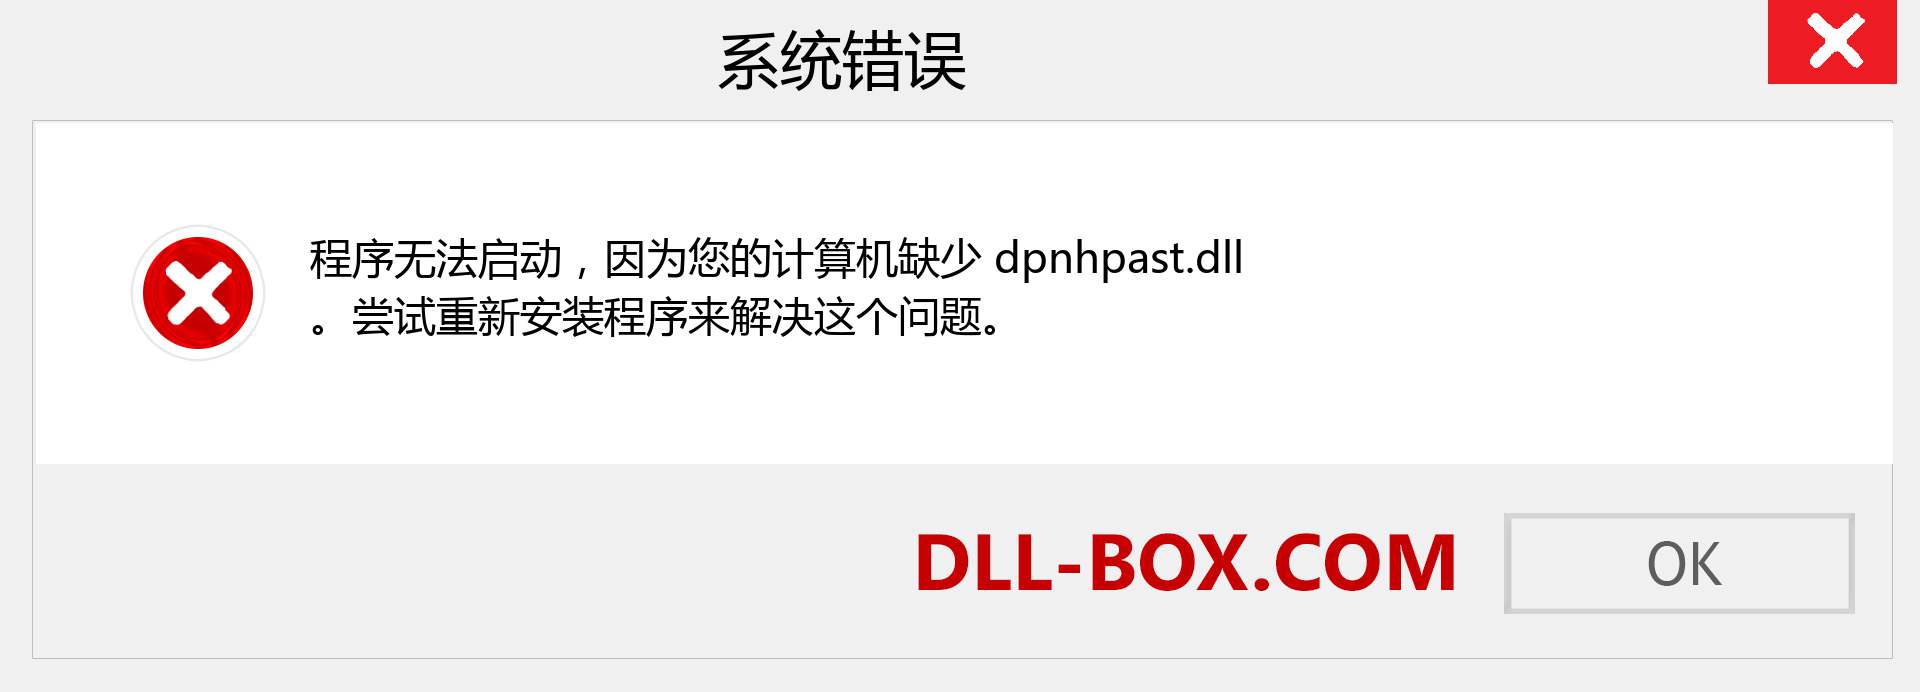 dpnhpast.dll 文件丢失？。 适用于 Windows 7、8、10 的下载 - 修复 Windows、照片、图像上的 dpnhpast dll 丢失错误